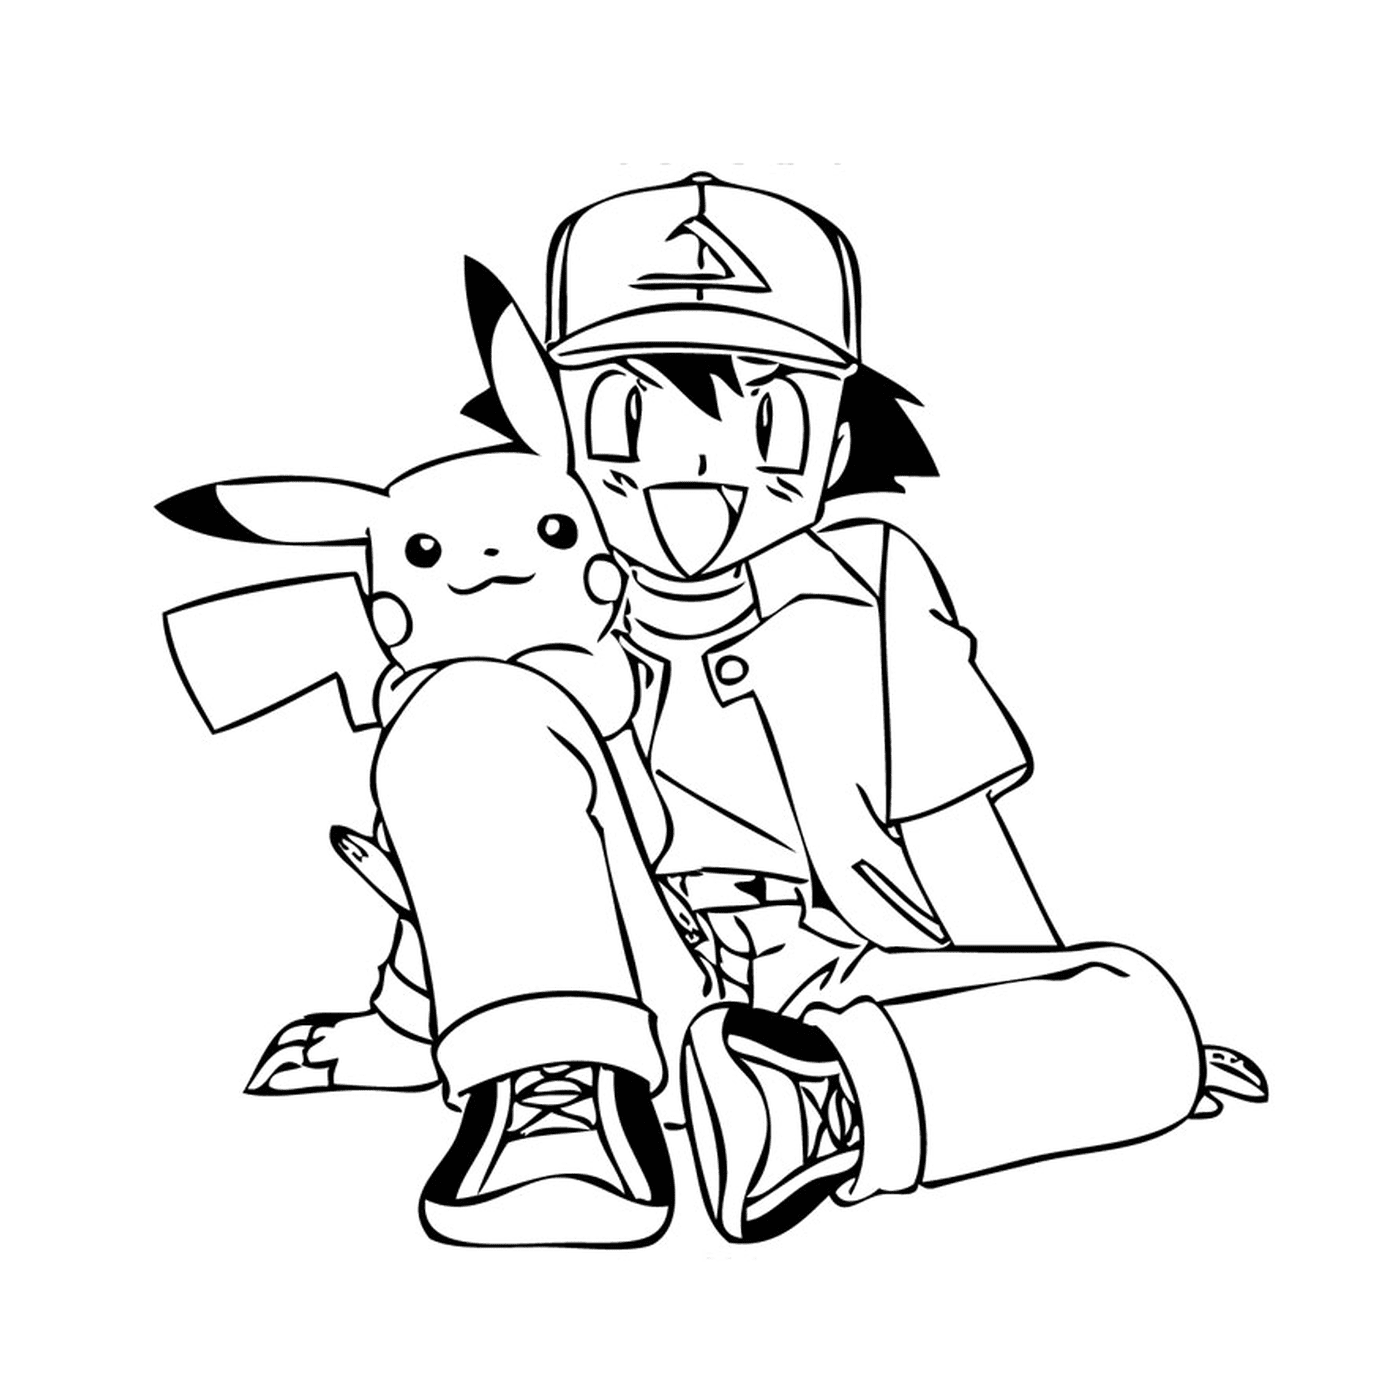  Una persona sentada en el suelo con un Pikachu 